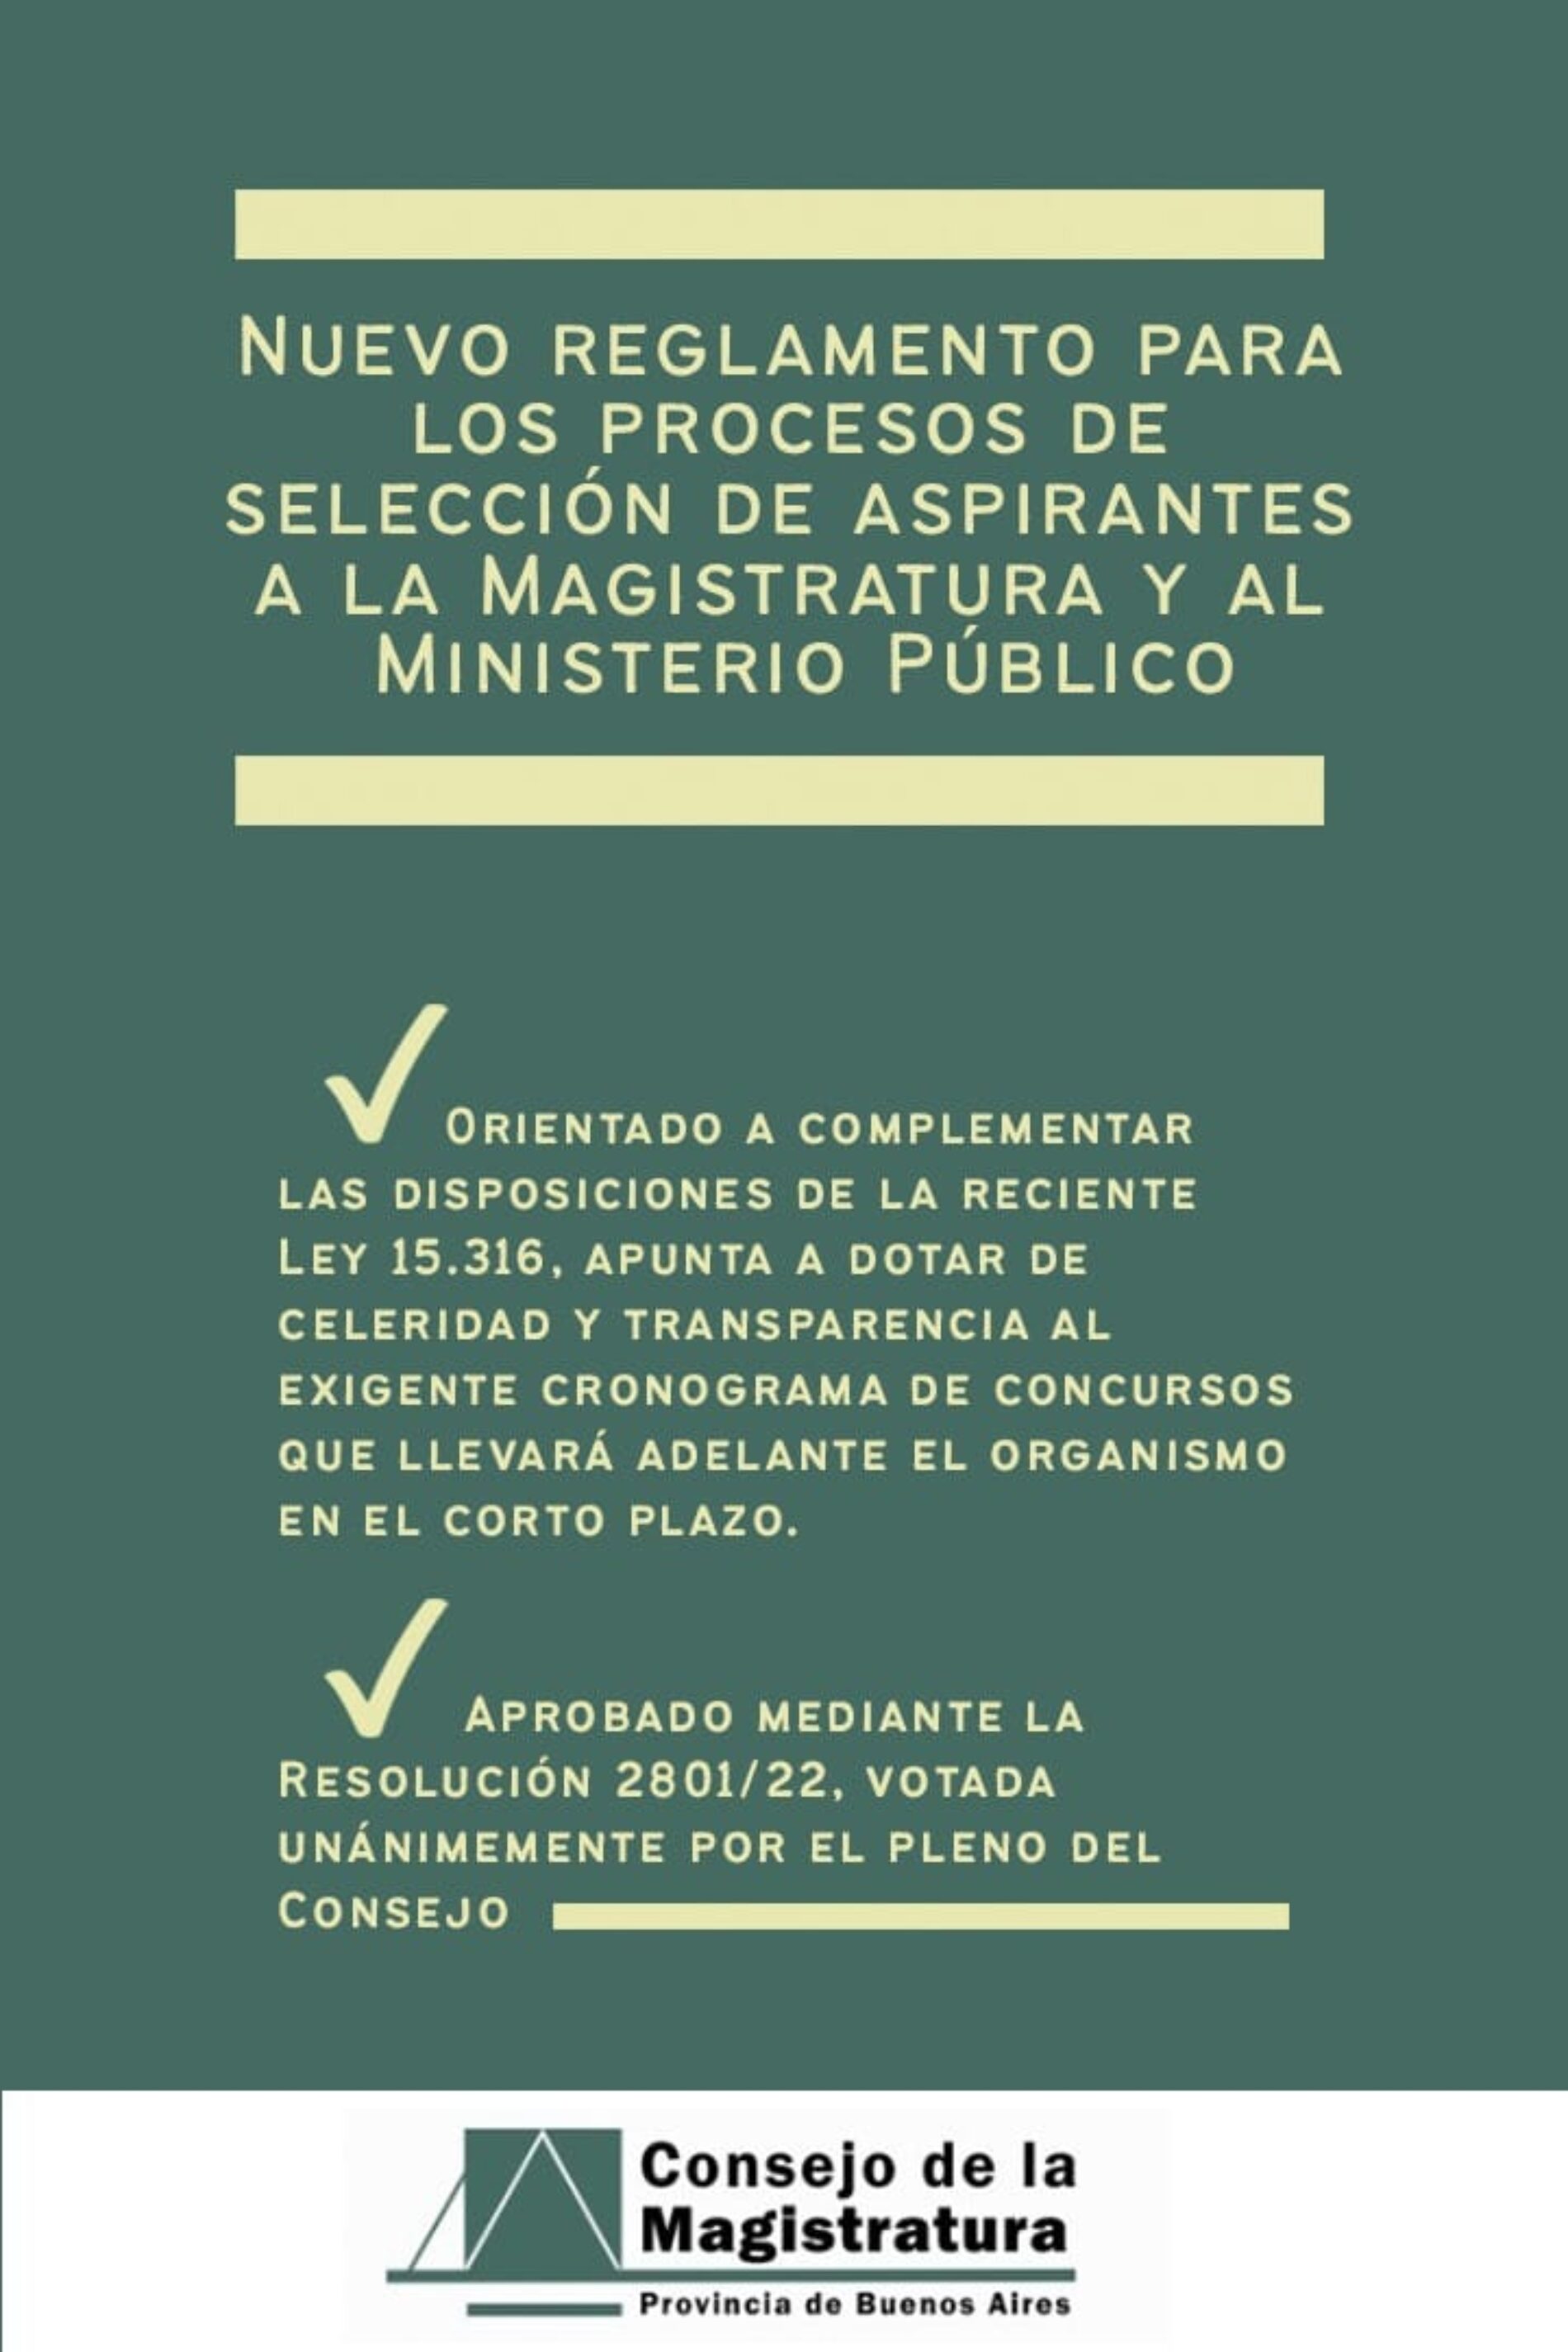 Consejo de la Magistratura PBA: Nuevo reglamento para los procesos de selección de aspirantes a la Magistratura y al Ministerio Público.